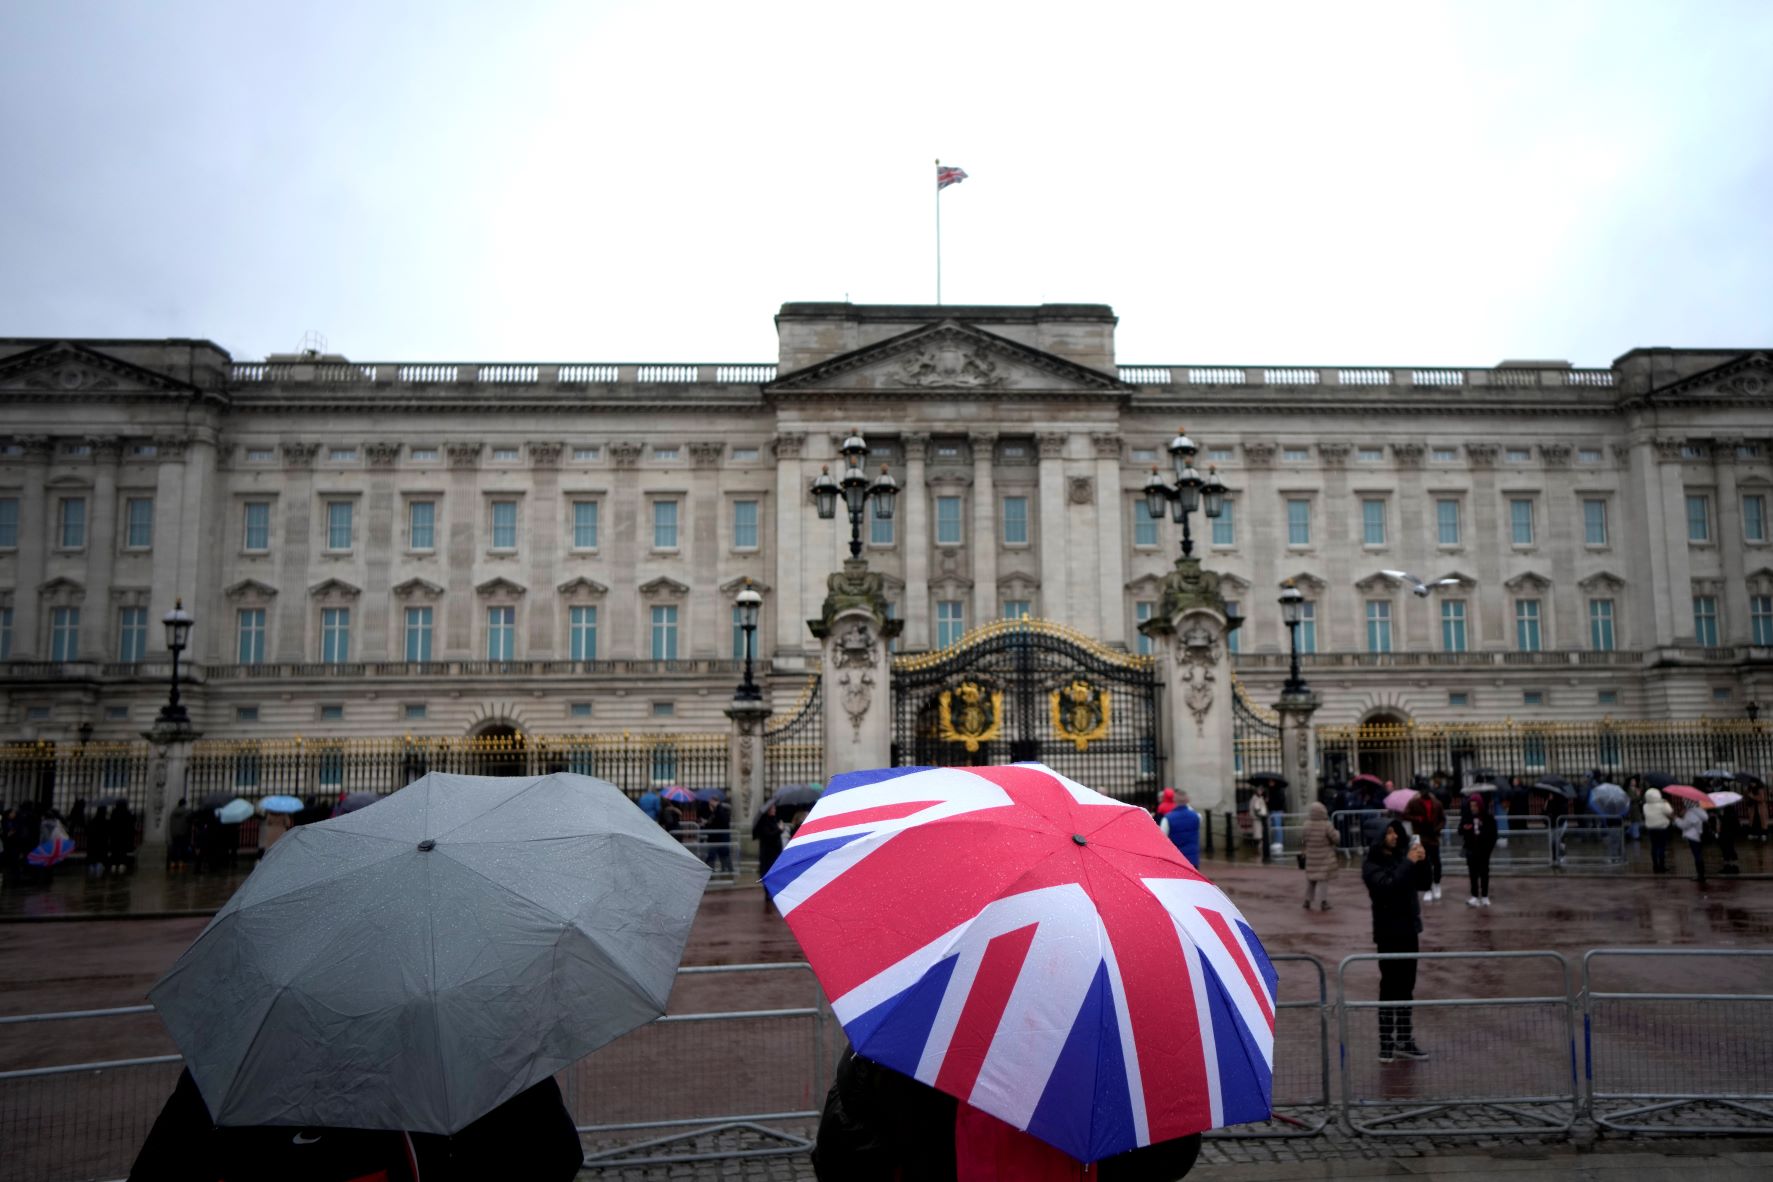 سواح يحتمون من المطر بمظلة أثناء زيارتهم قصر باكنغهام في لندن بتاريخ 10 يناير 2023